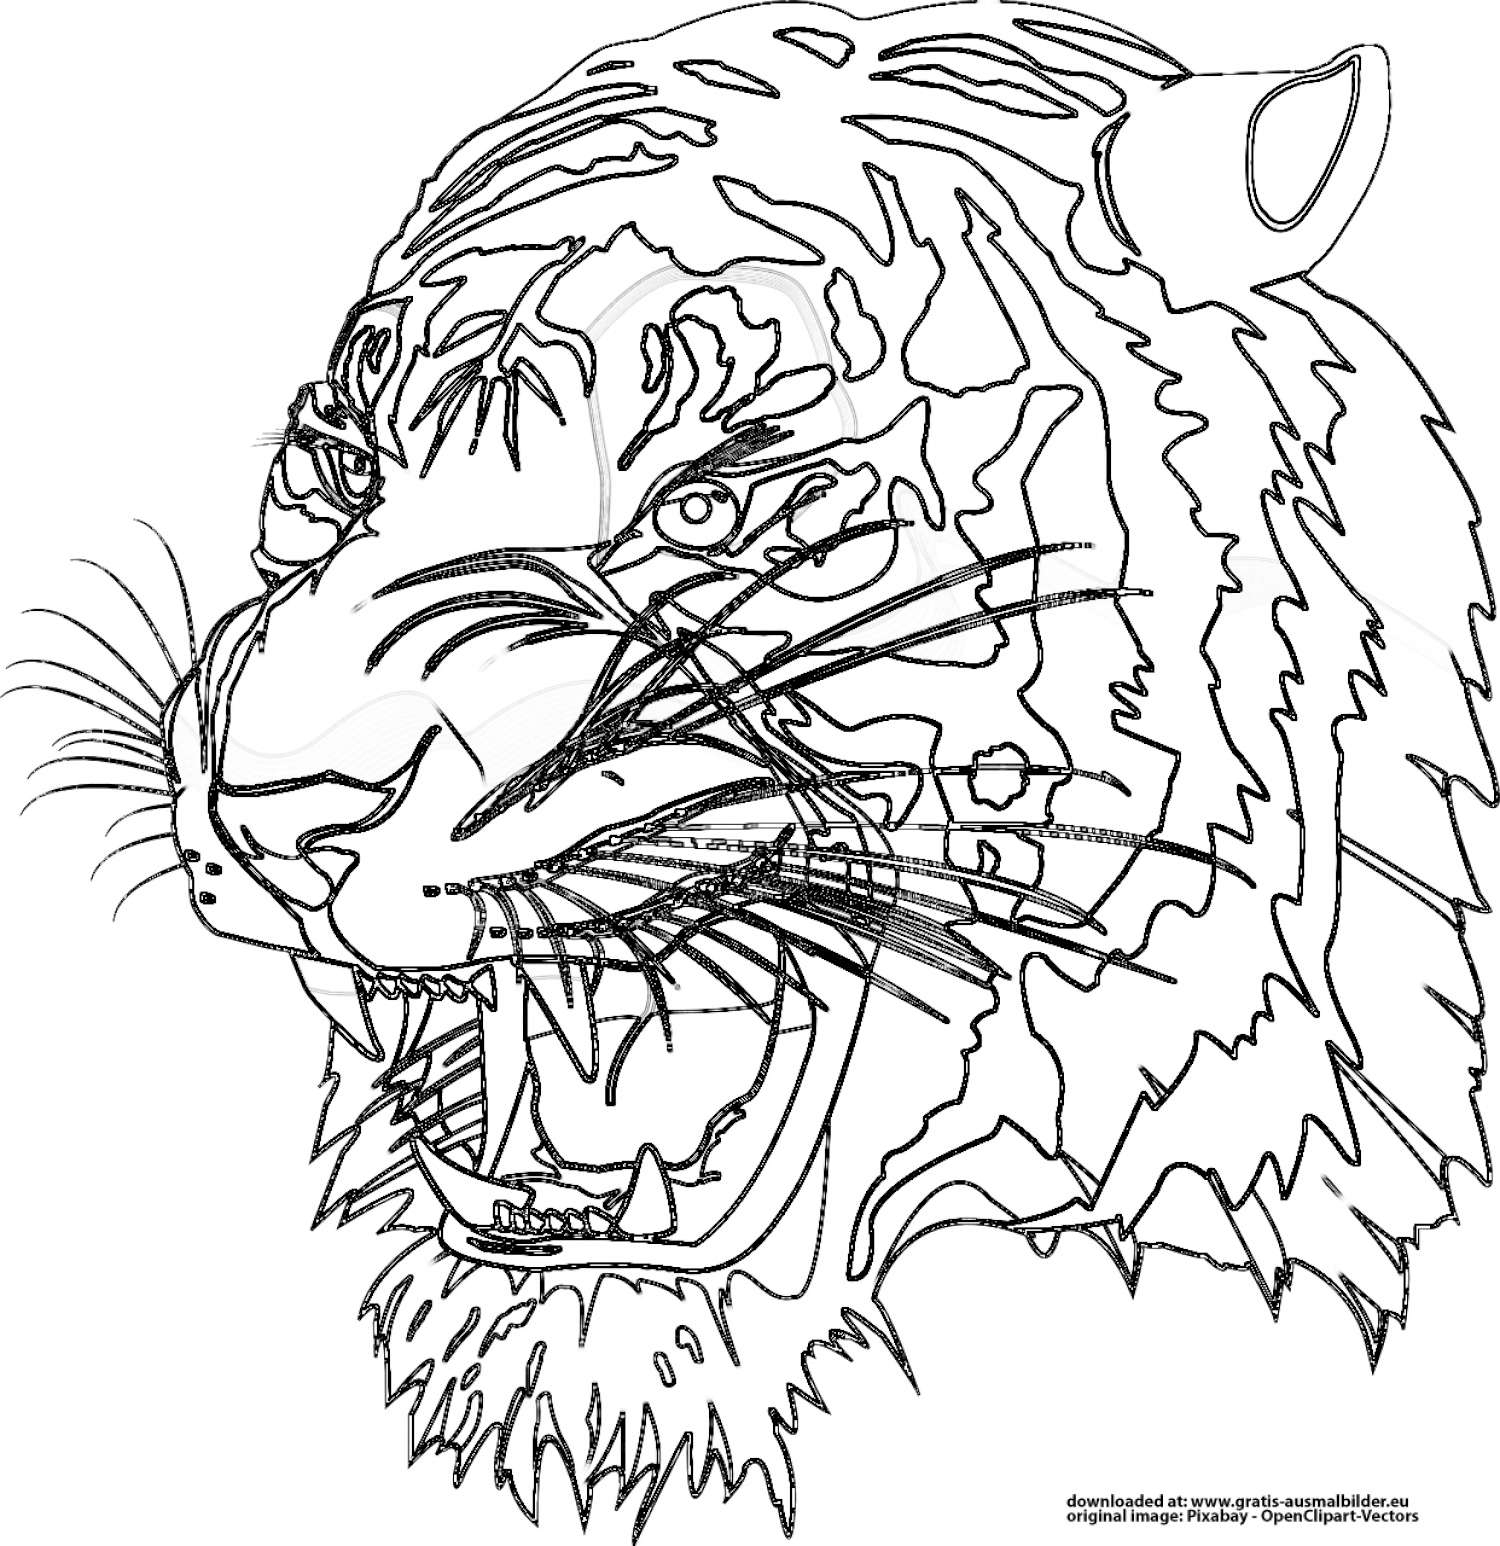 Tiger - Gratis Ausmalbild für Ausmalbild Tiere